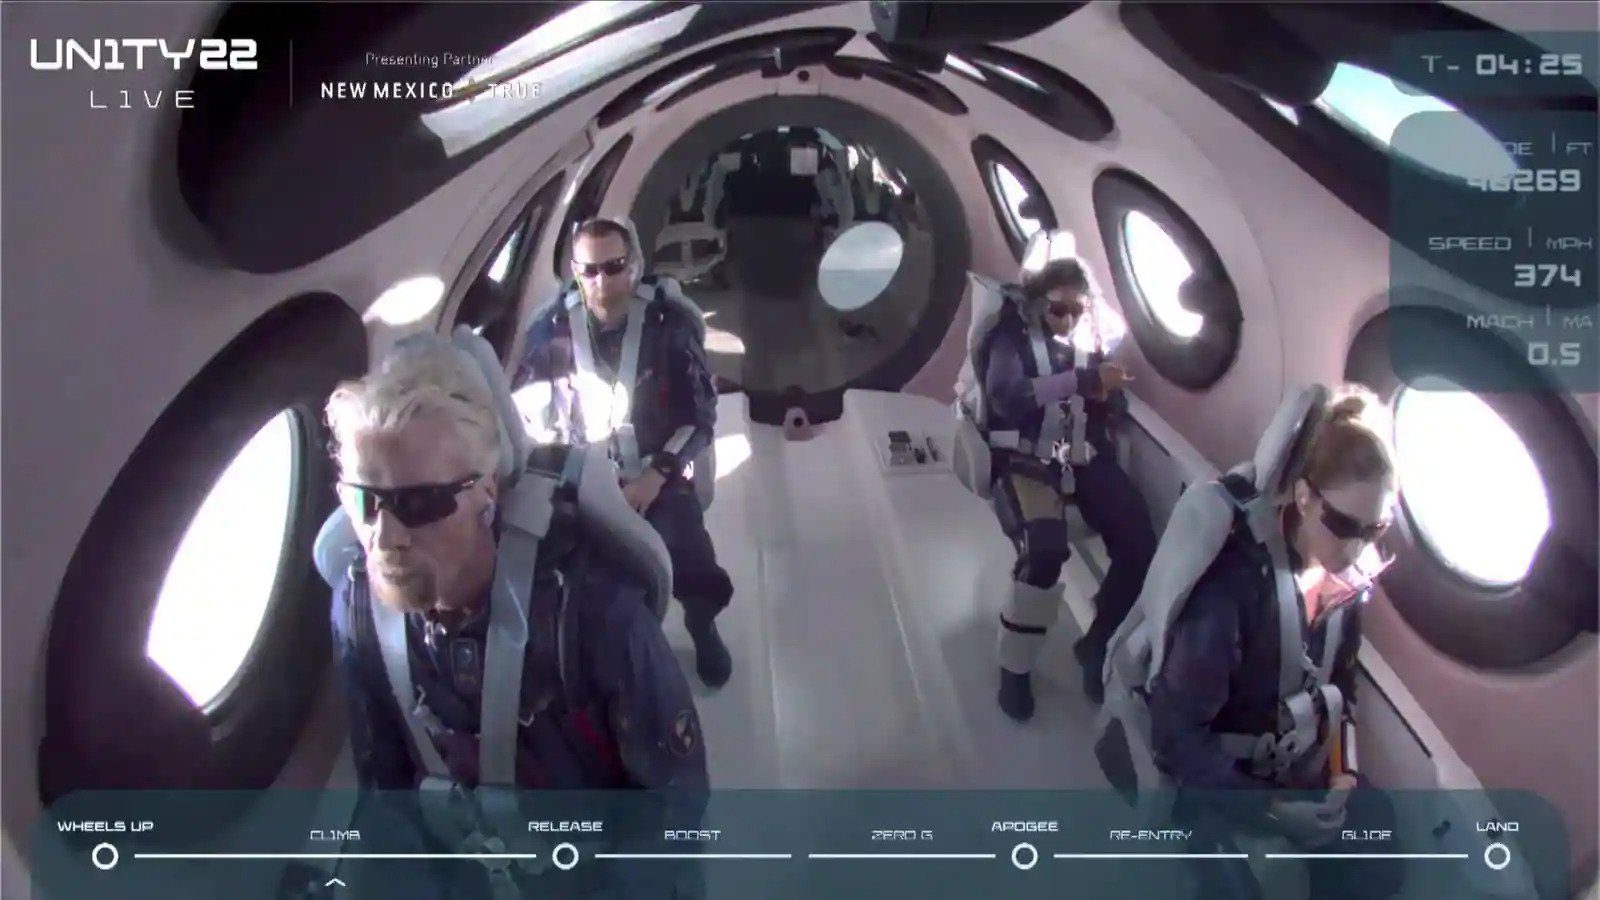 El momento en que el VSS Unity de Richard Branson viajó al borde del espacio y regresó